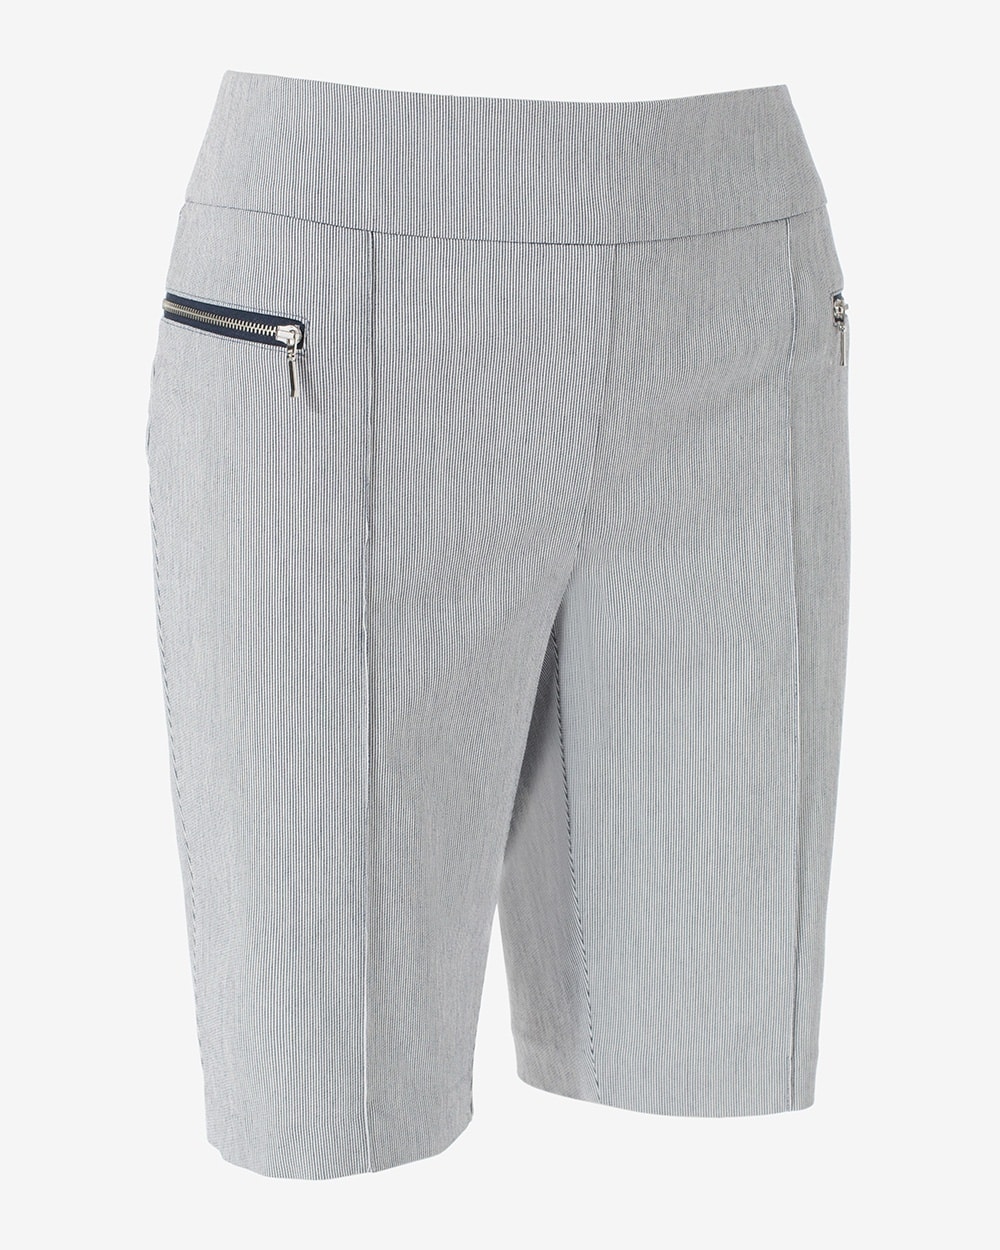 Perfect Stretch Stripe Zipper Detail Shorts- 10 Inch Inseam